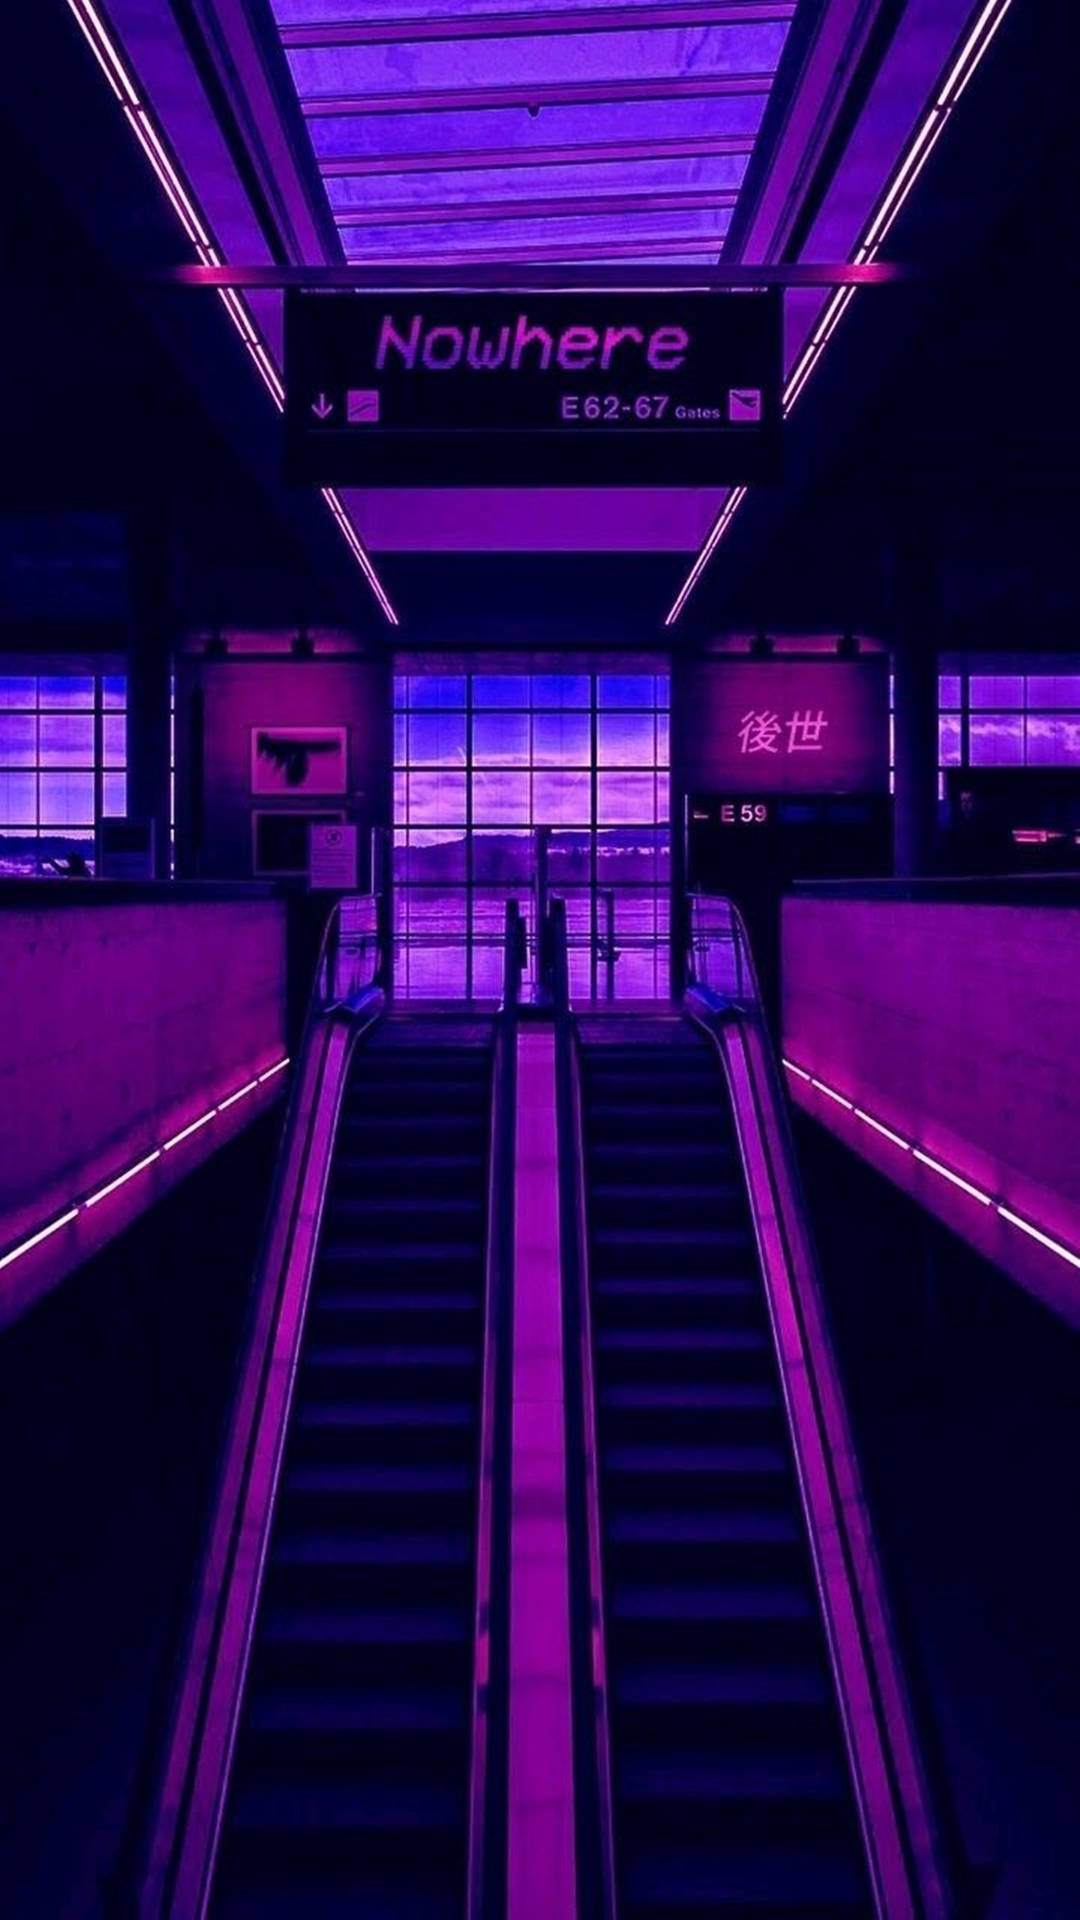 Neónpúrpura De 4k En El Edificio Con Escalera Mecánica Fondo de pantalla